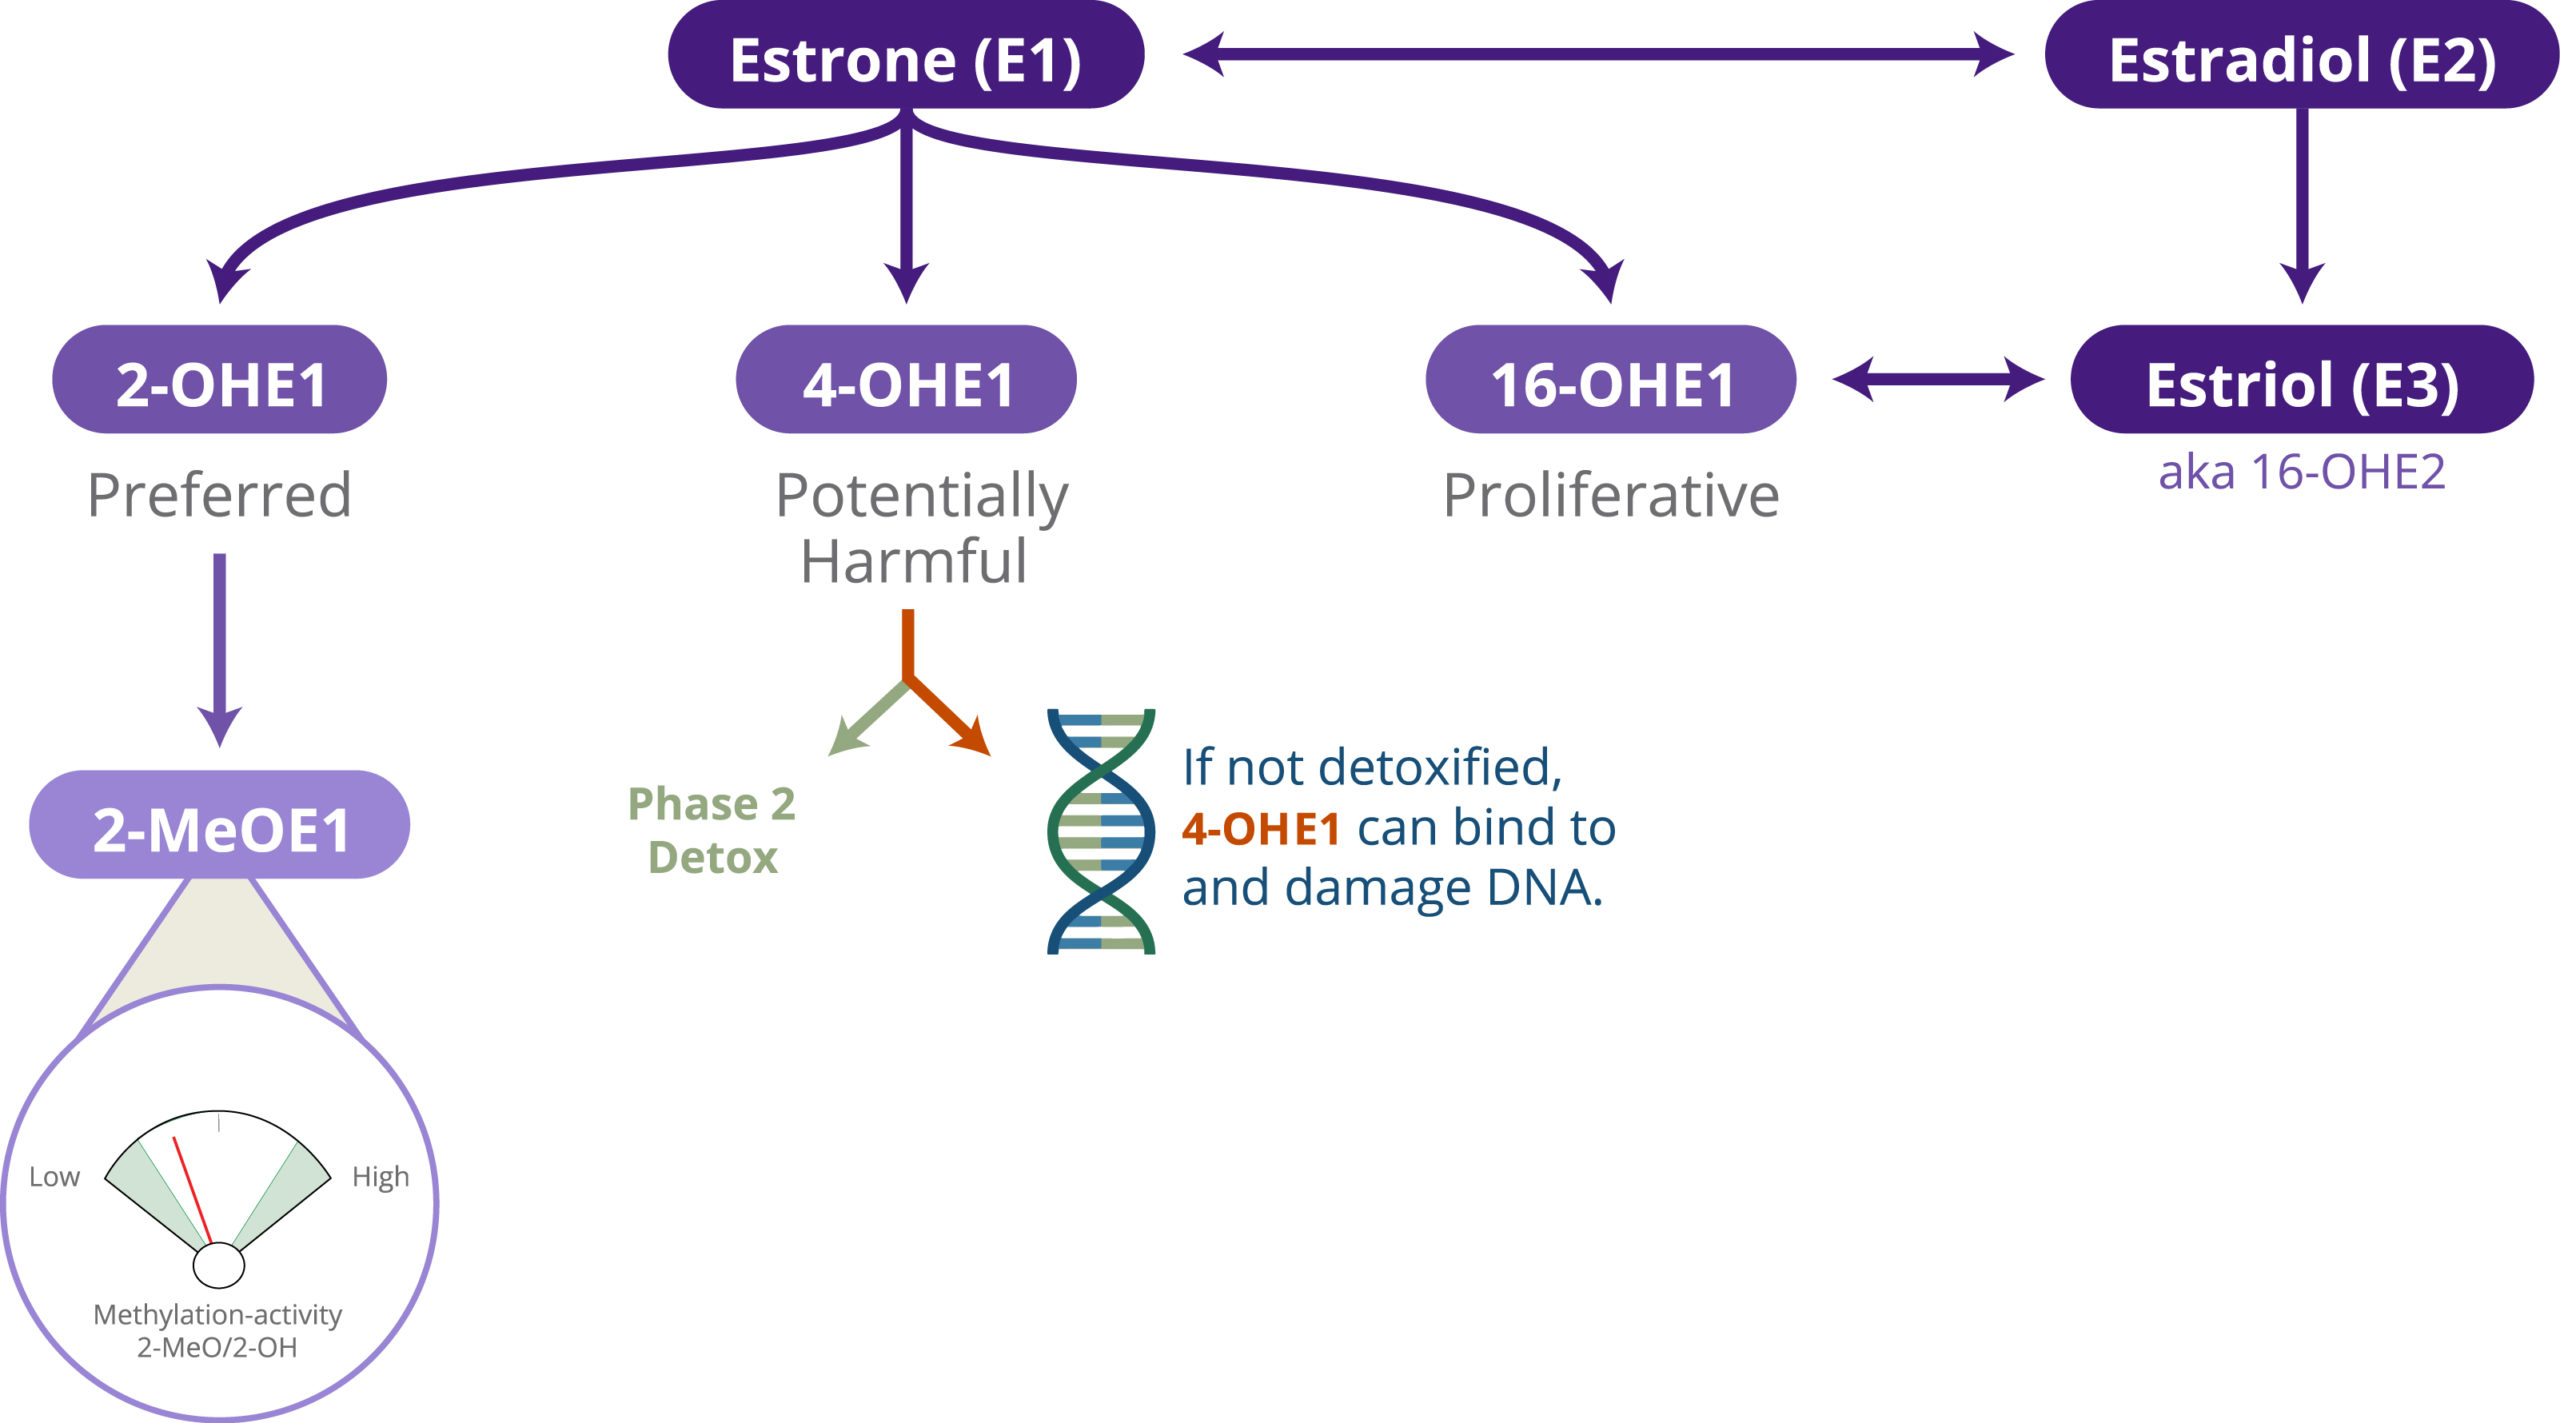 estrogen detoxification pathway including estrone, estradiol, estriol, and their metabolites